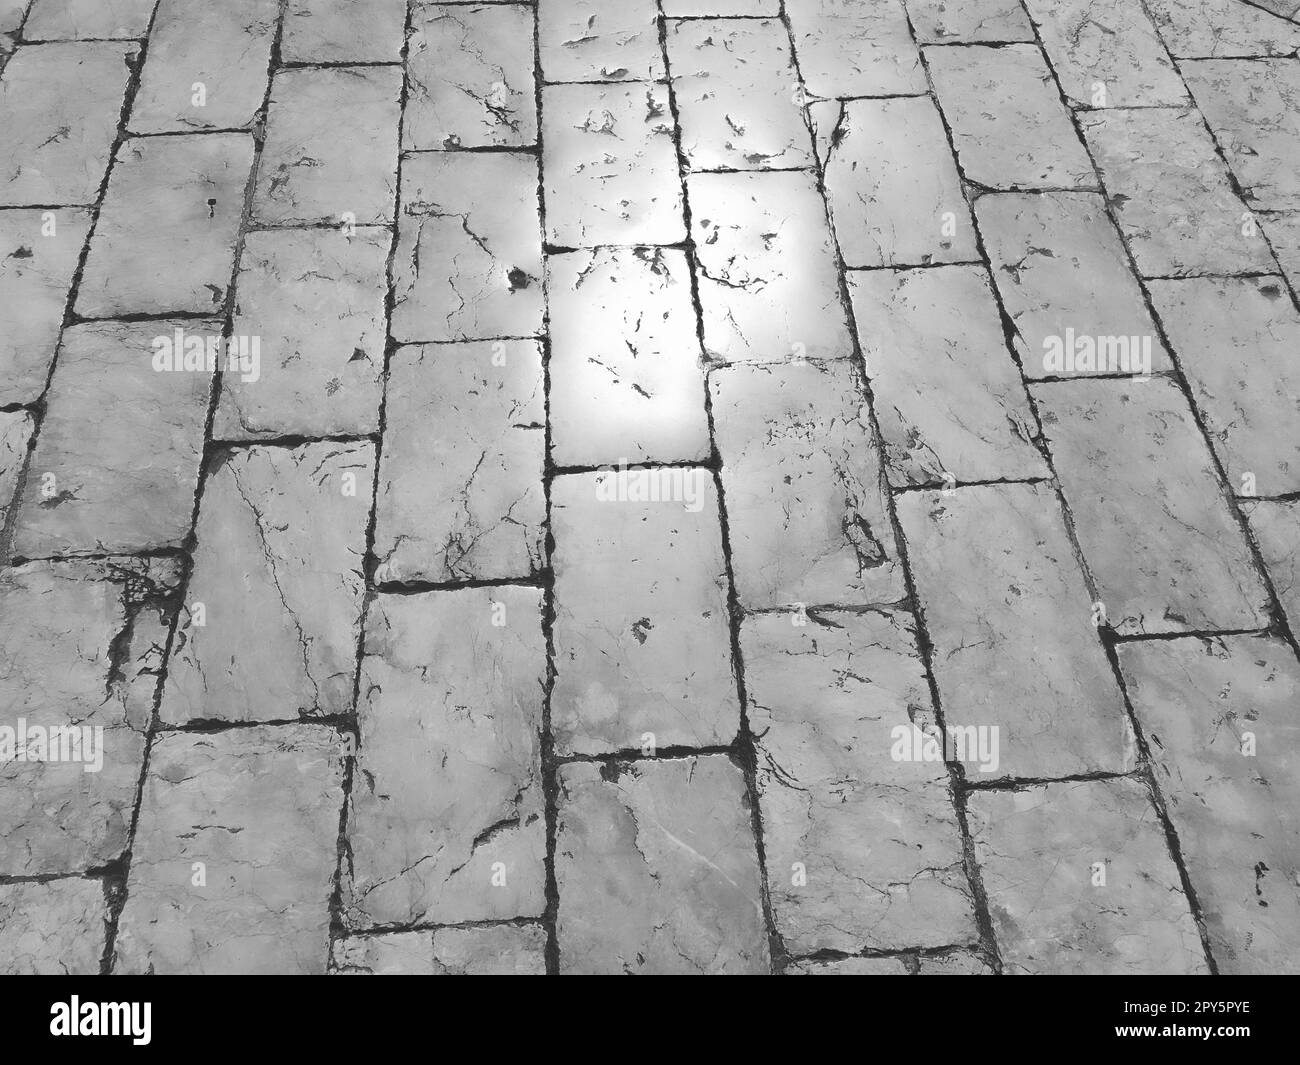 Sol en marbre dans la rue, Dubrovnik, Croatie. Carreaux de maçonnerie anciens blocs rectangulaires. Roche métamorphique composée de calcite CaCO3. Les carreaux polis gécoutent le soleil. Noir et blanc monochrome. Banque D'Images